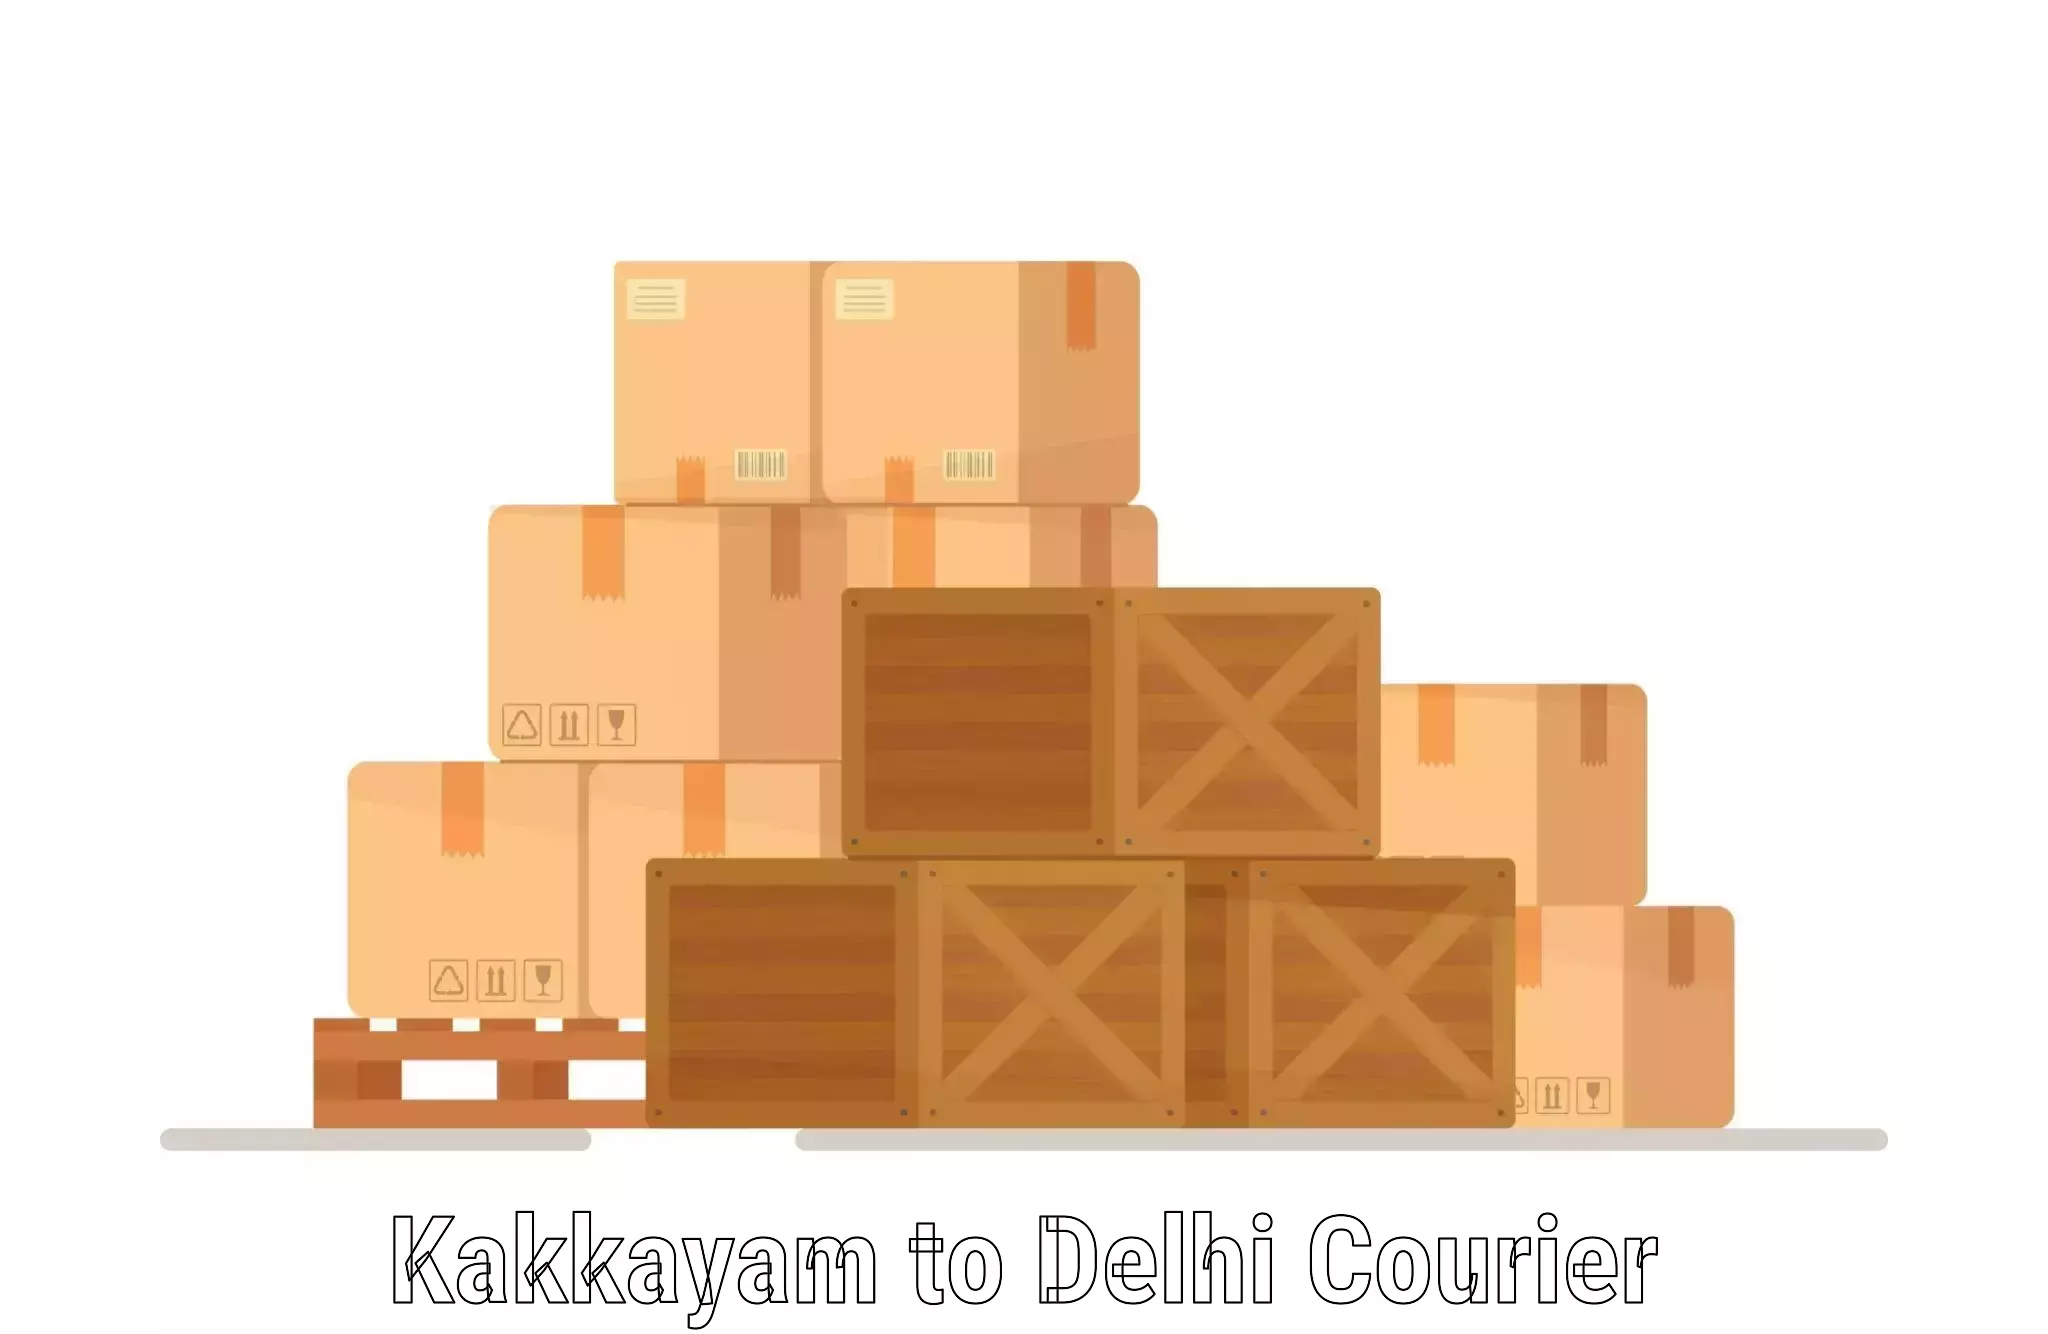 Efficient shipping platforms Kakkayam to Lodhi Road